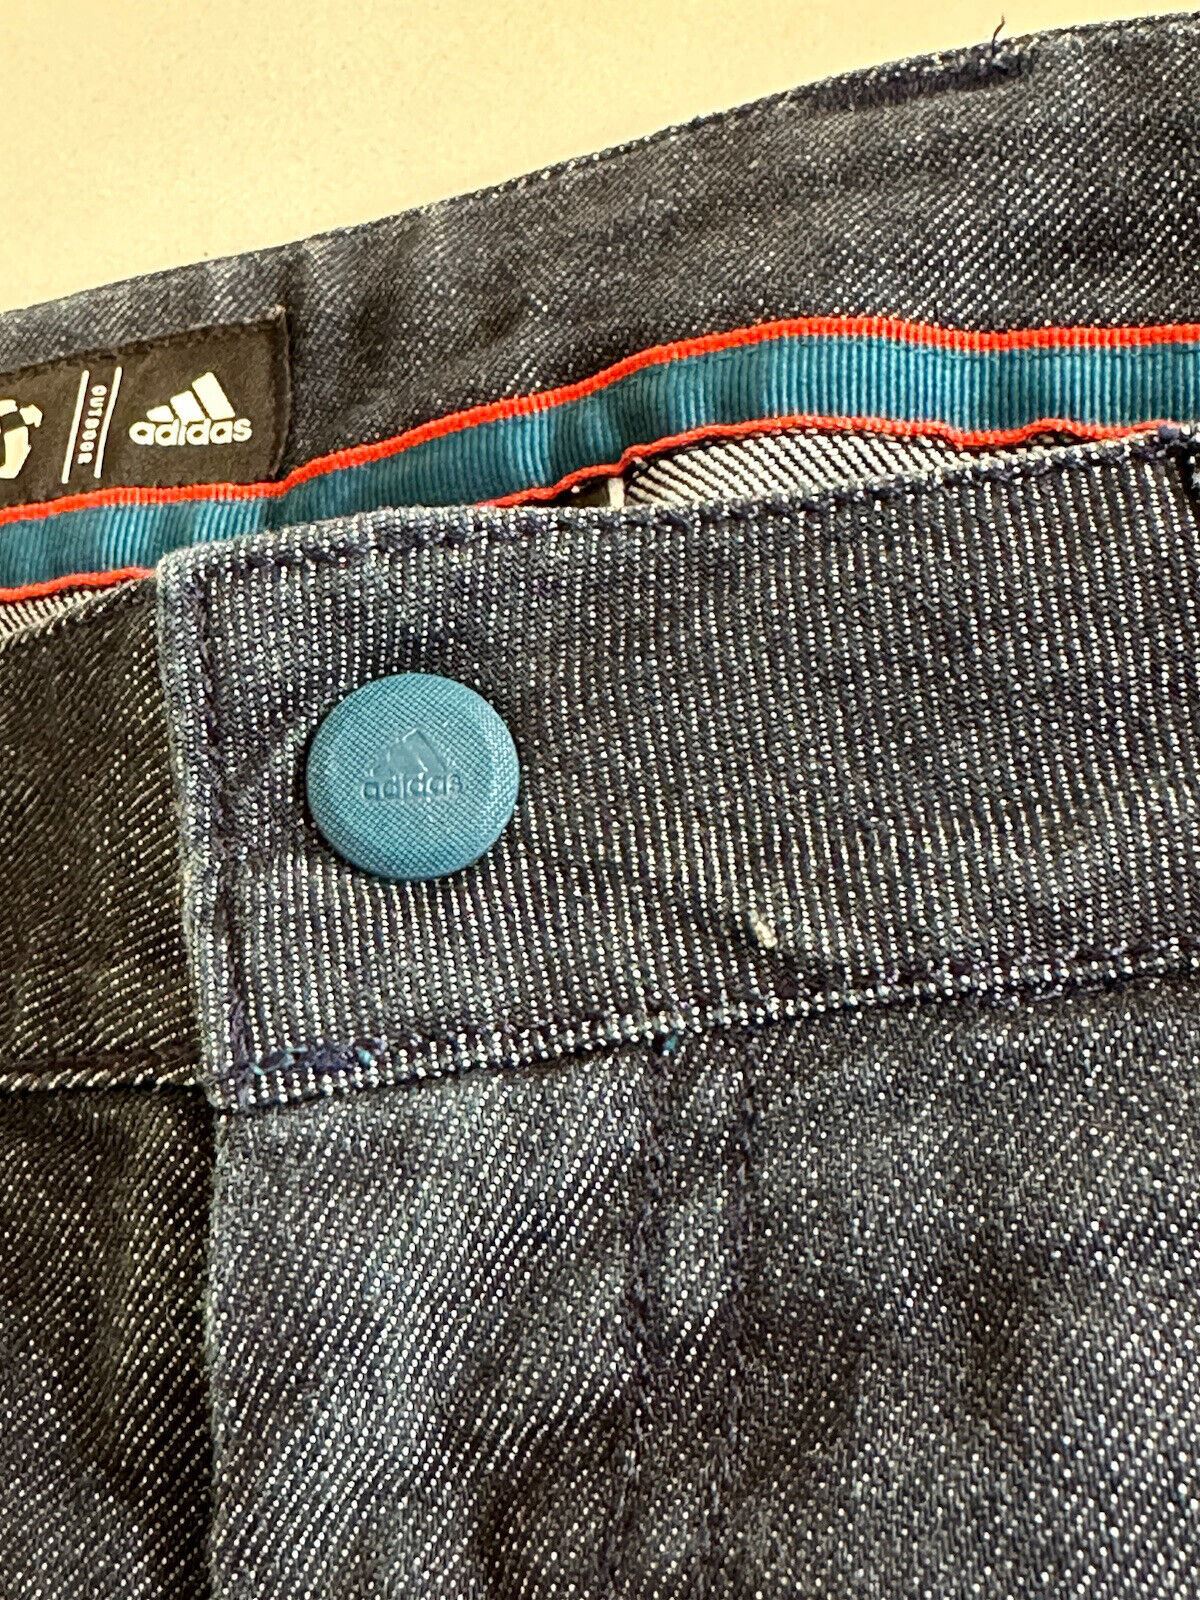 Мужские синие джинсовые шорты Adidas, размер талии 32 дюйма 